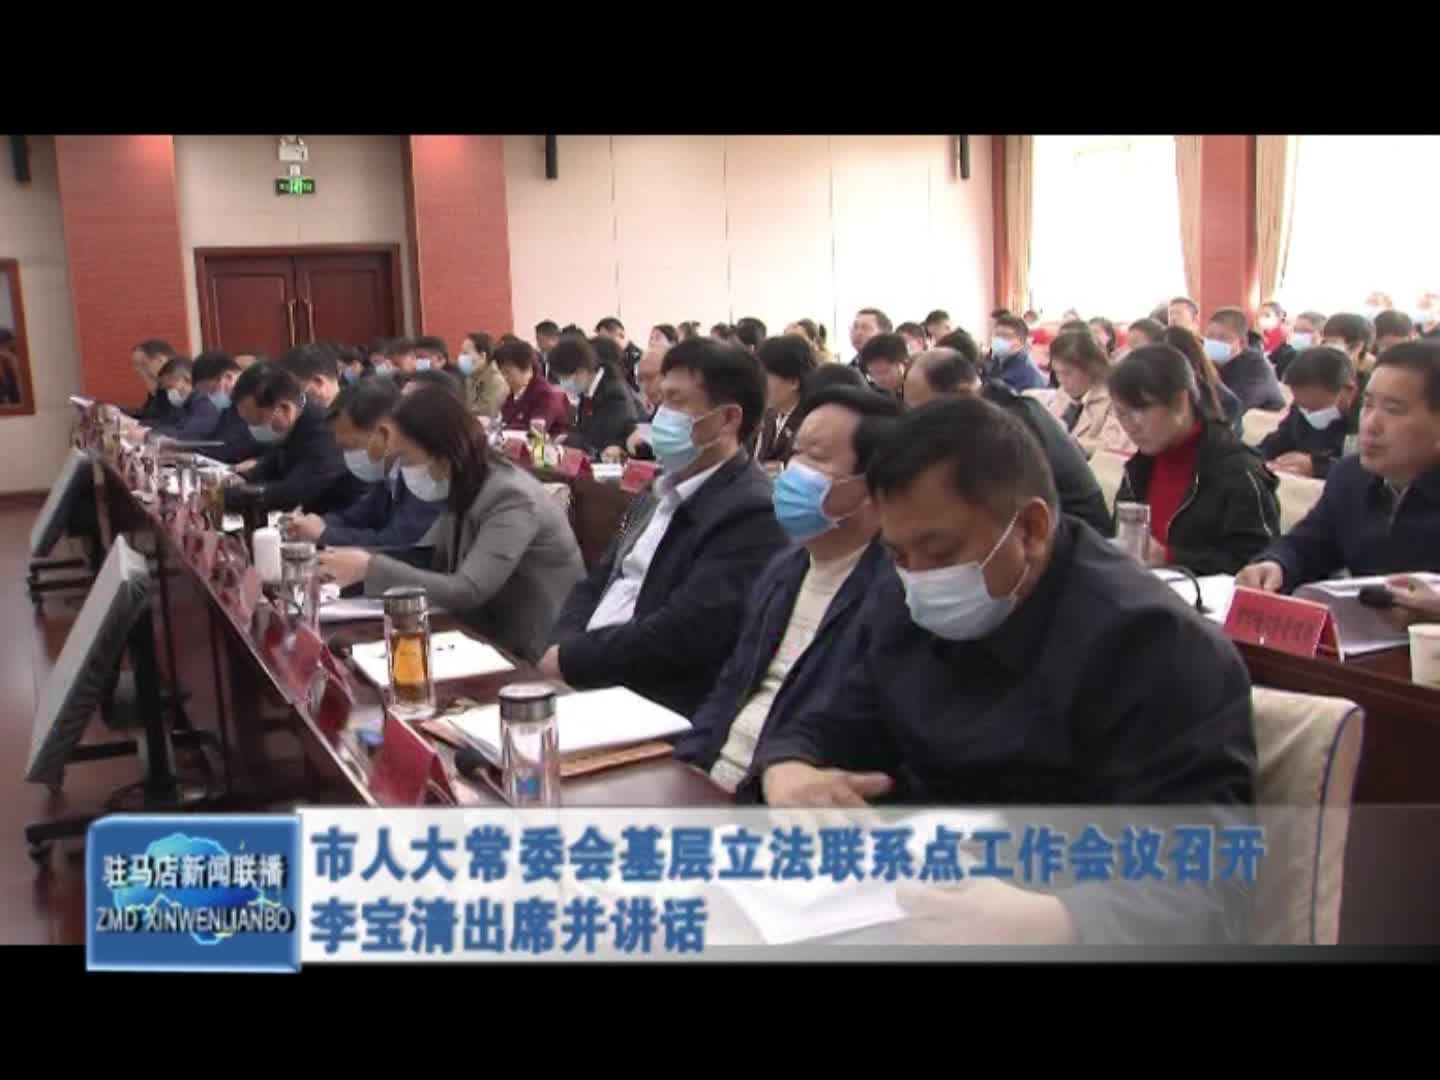 市人大常委會基層立法聯系點工作會議召開 李寶清出席并講話